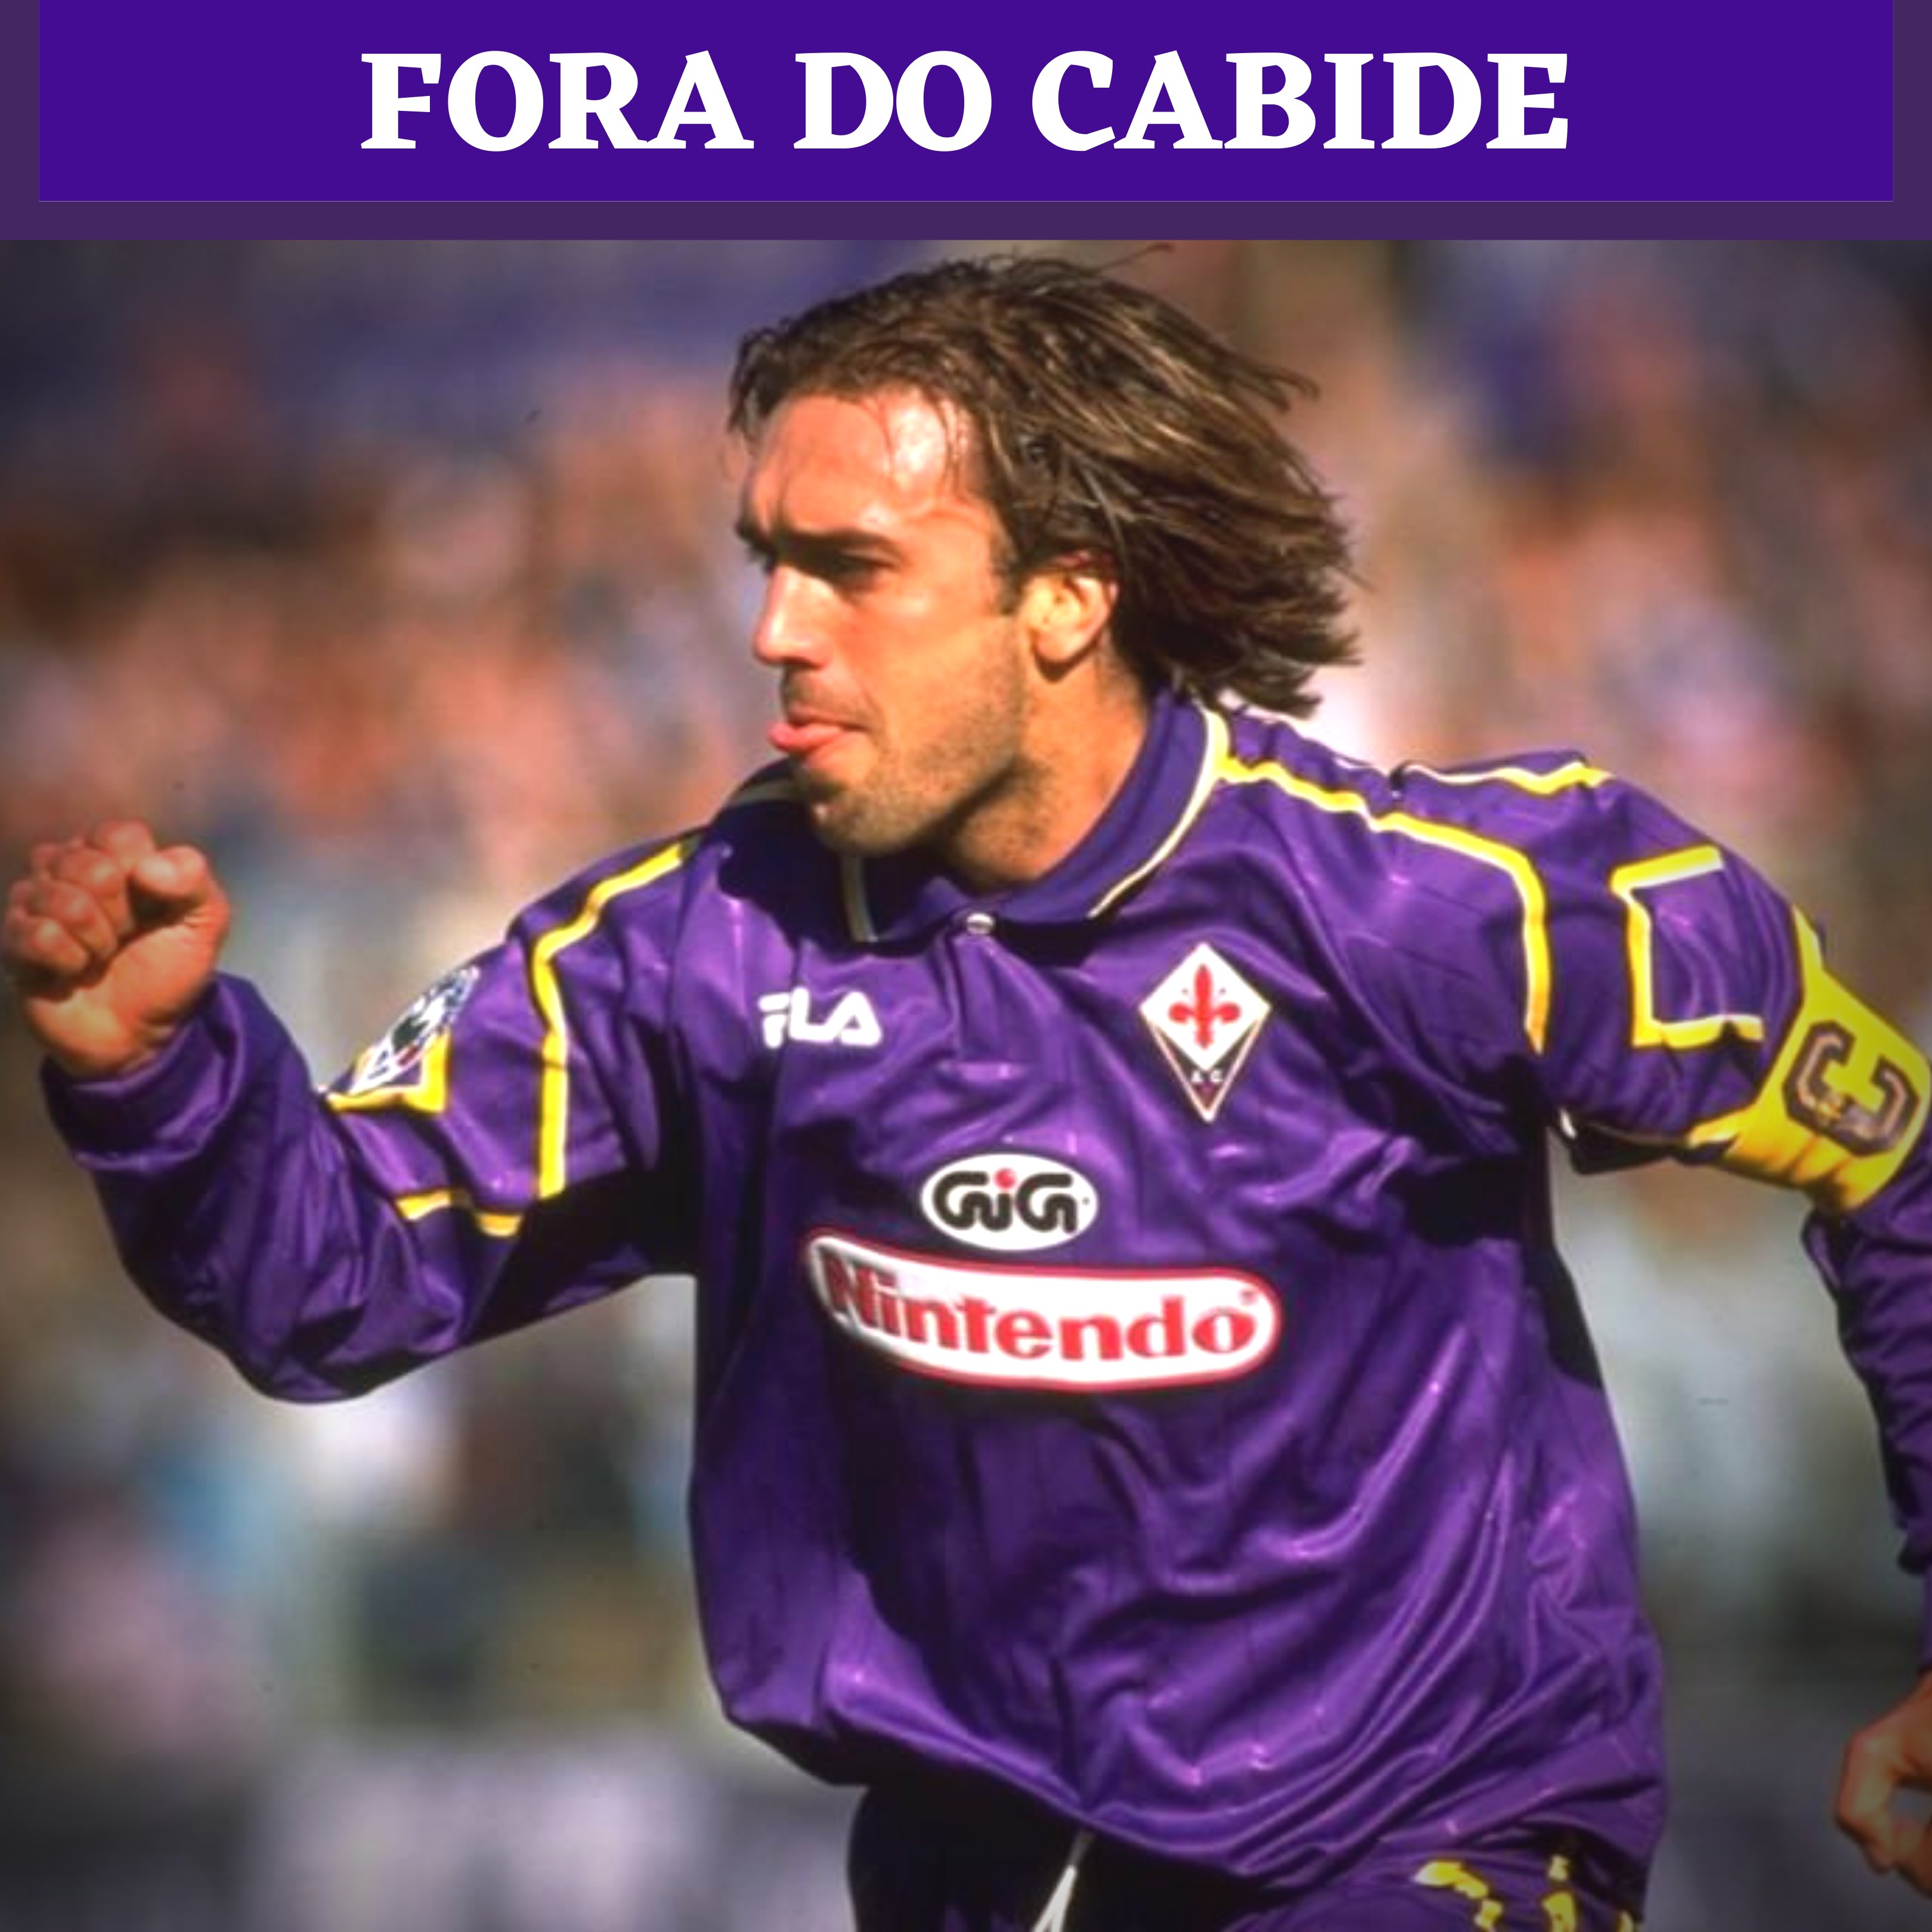 Fiorentina Brasil Twitter: "Lá da temporada 1997-98. O primeiro com patrocínio @Nintendo e também o foi utilizado por #Edmundo logo que ele chegou #Florença. E um pouco da